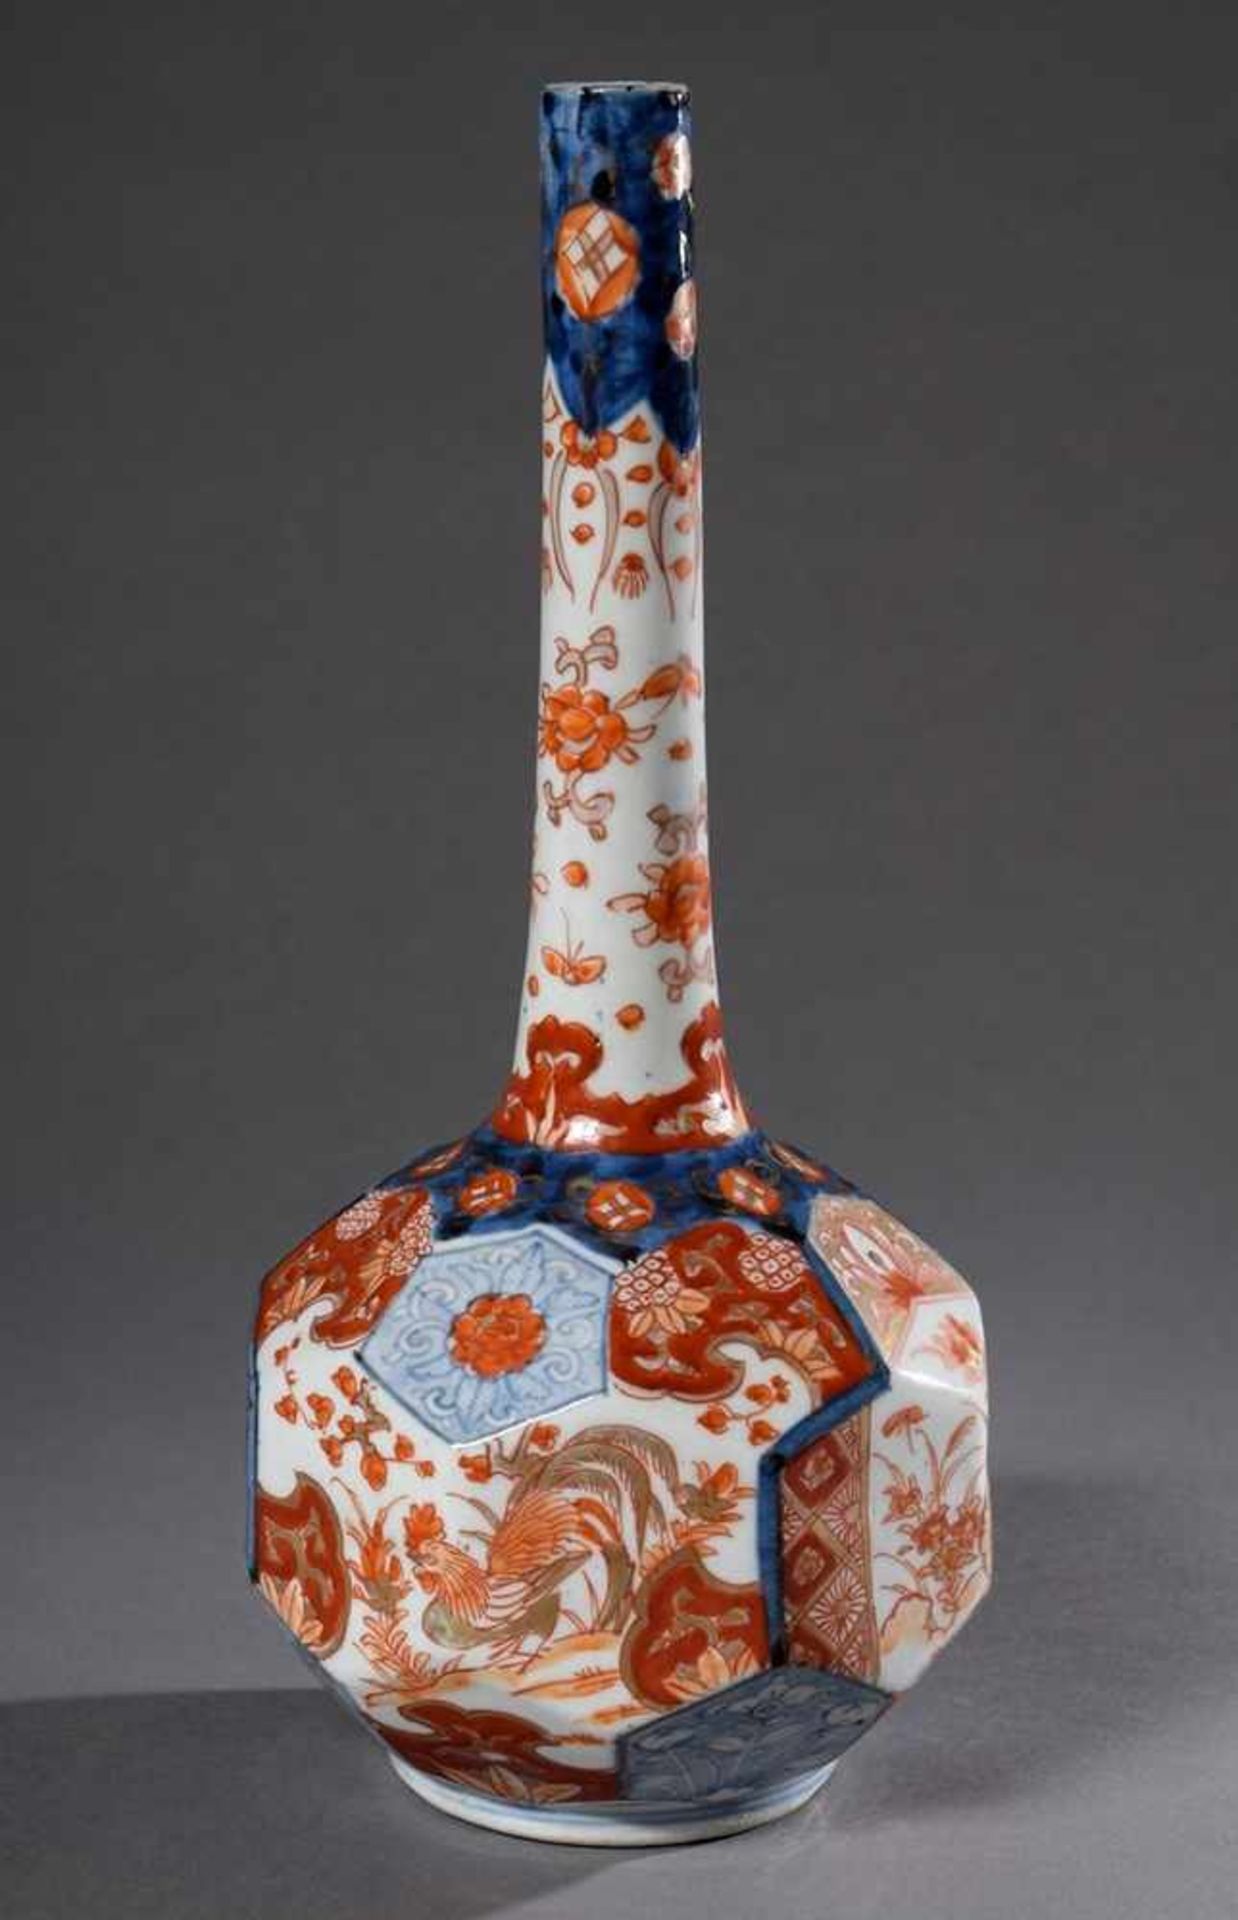 Japanische Vase mit polygonalem Korpus und langem Hals in Imari Bemalung, verso blaue